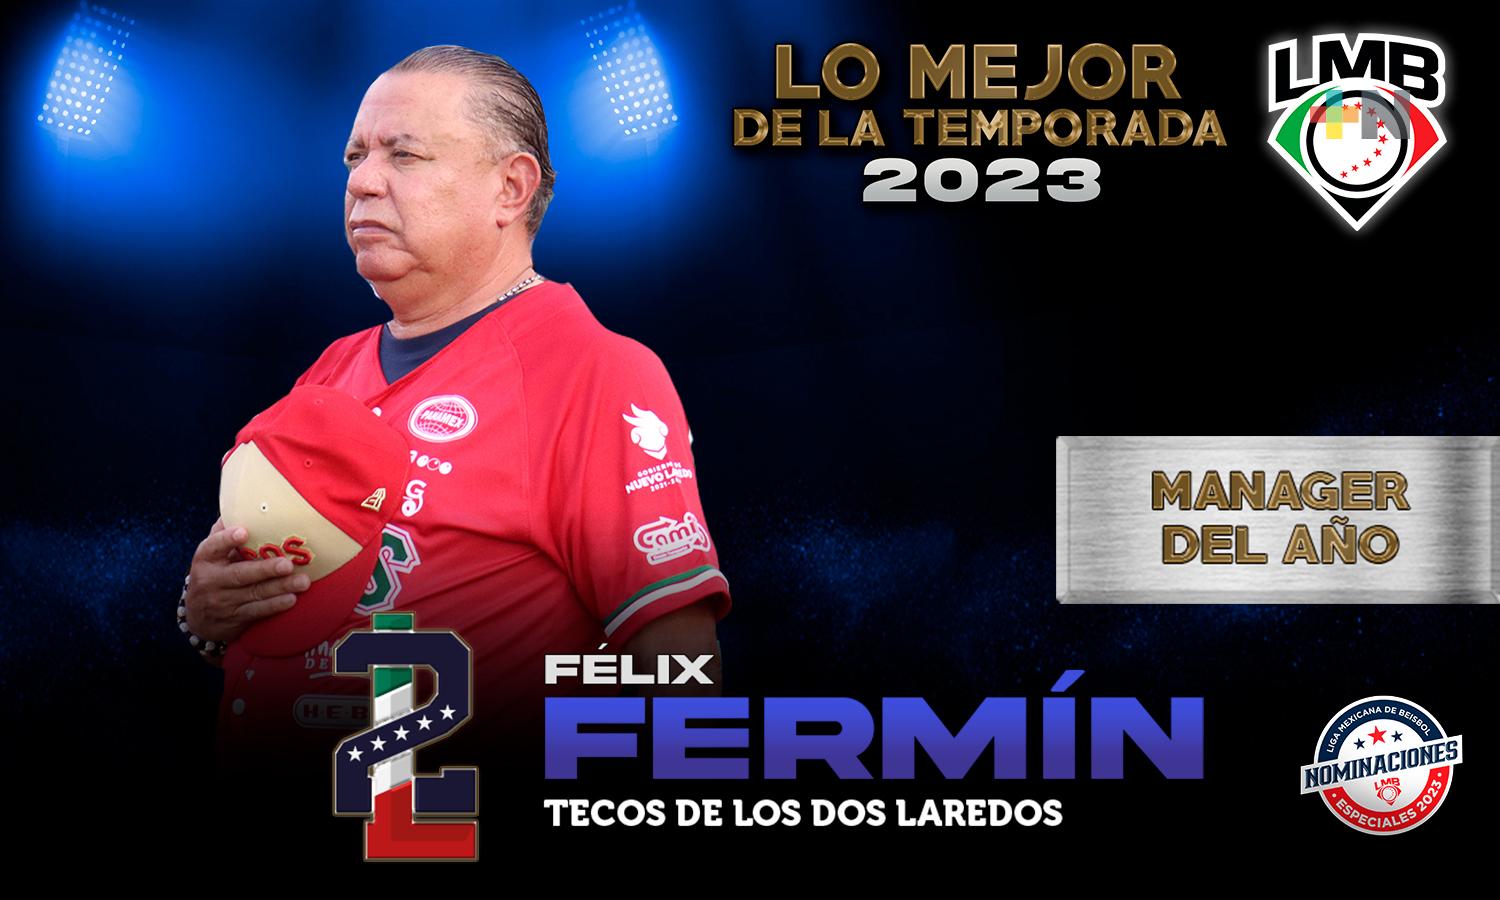 Félix Fermín repite una década después como Manager del Año en LMB